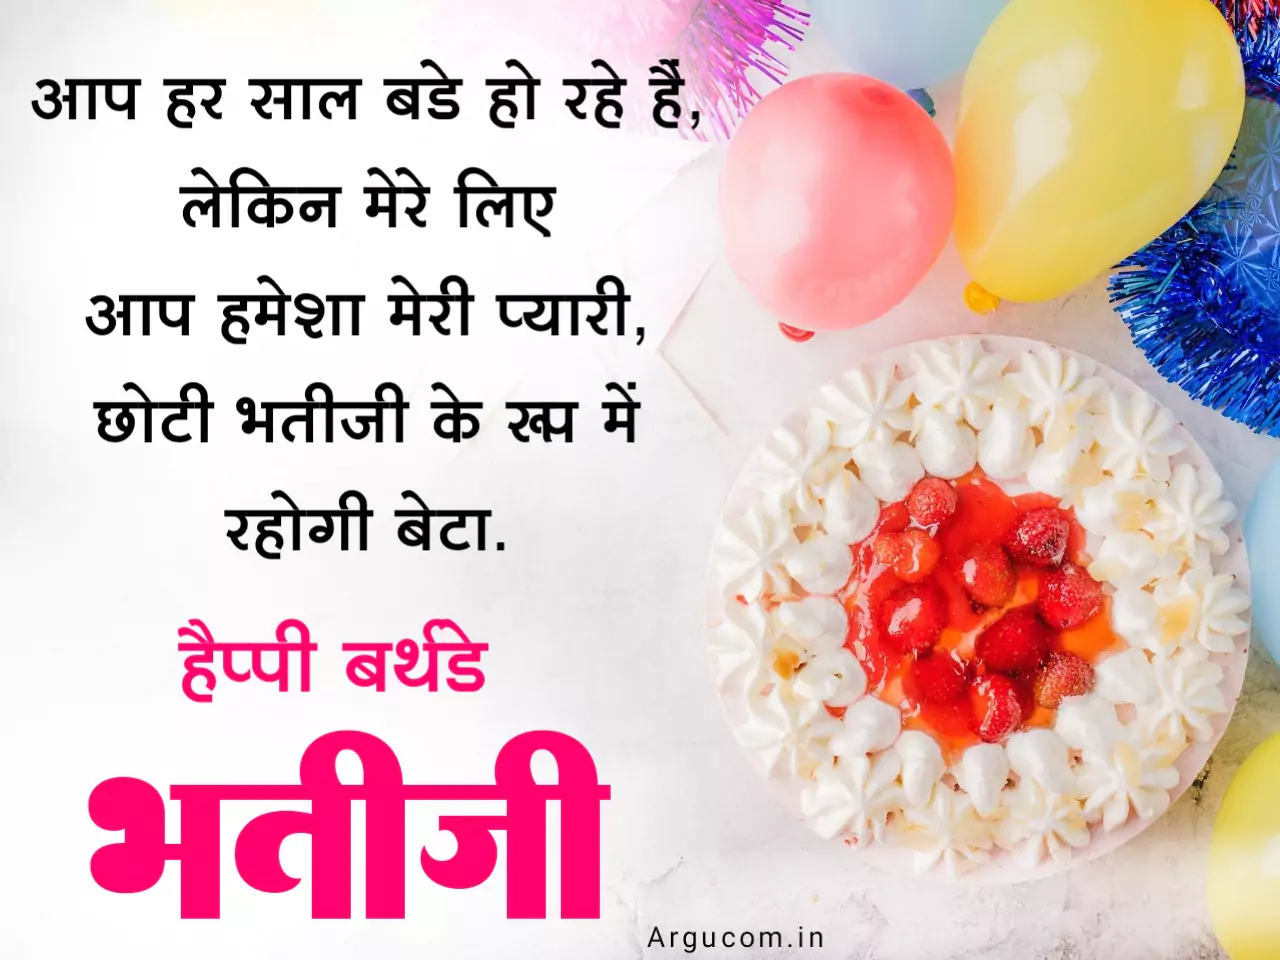 Bhatiji Birthday Wishes In Hindi